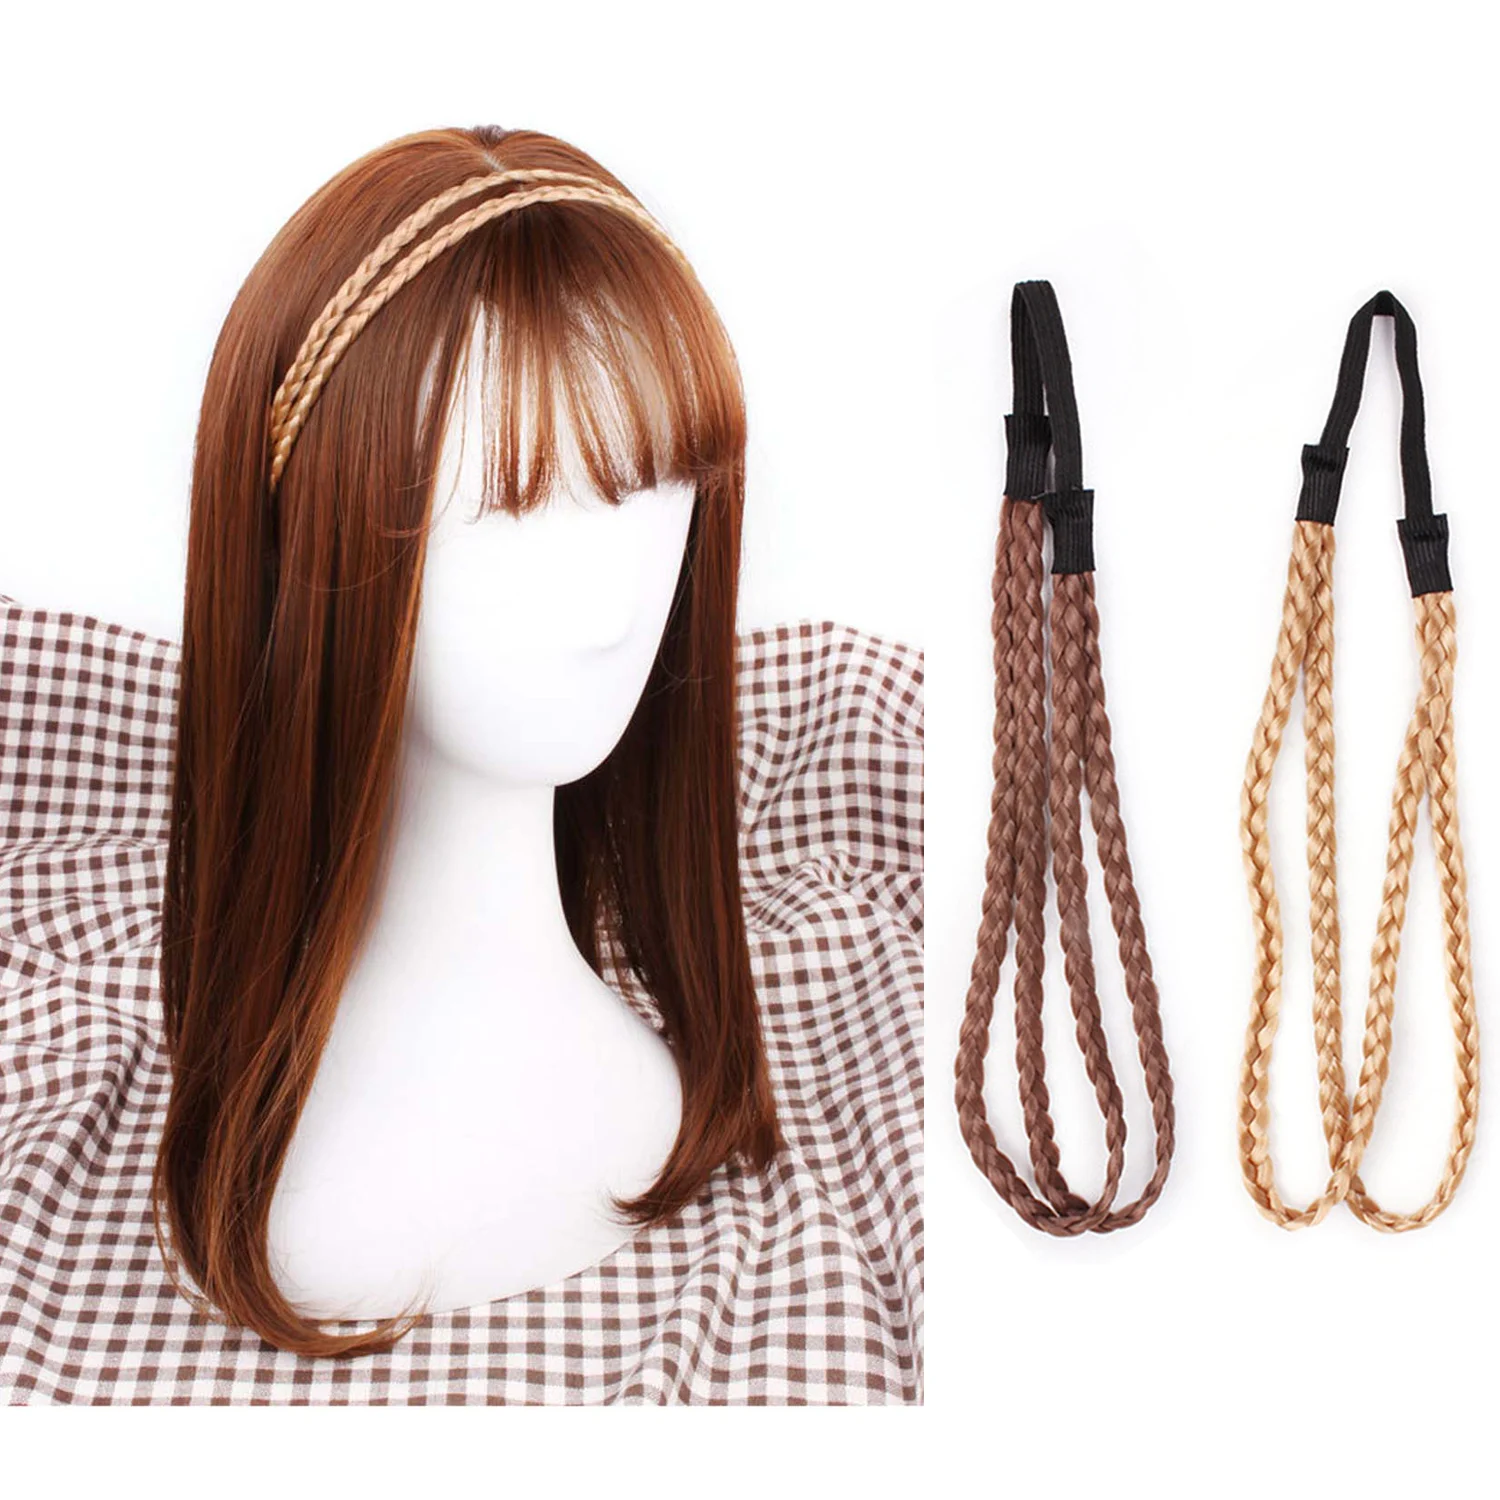 2 шт. плетеные повязки на голову имитация синтетических волос Плетеный ободок эластичная лента для волос оплетка аксессуары для волос для девушек повязки для волос